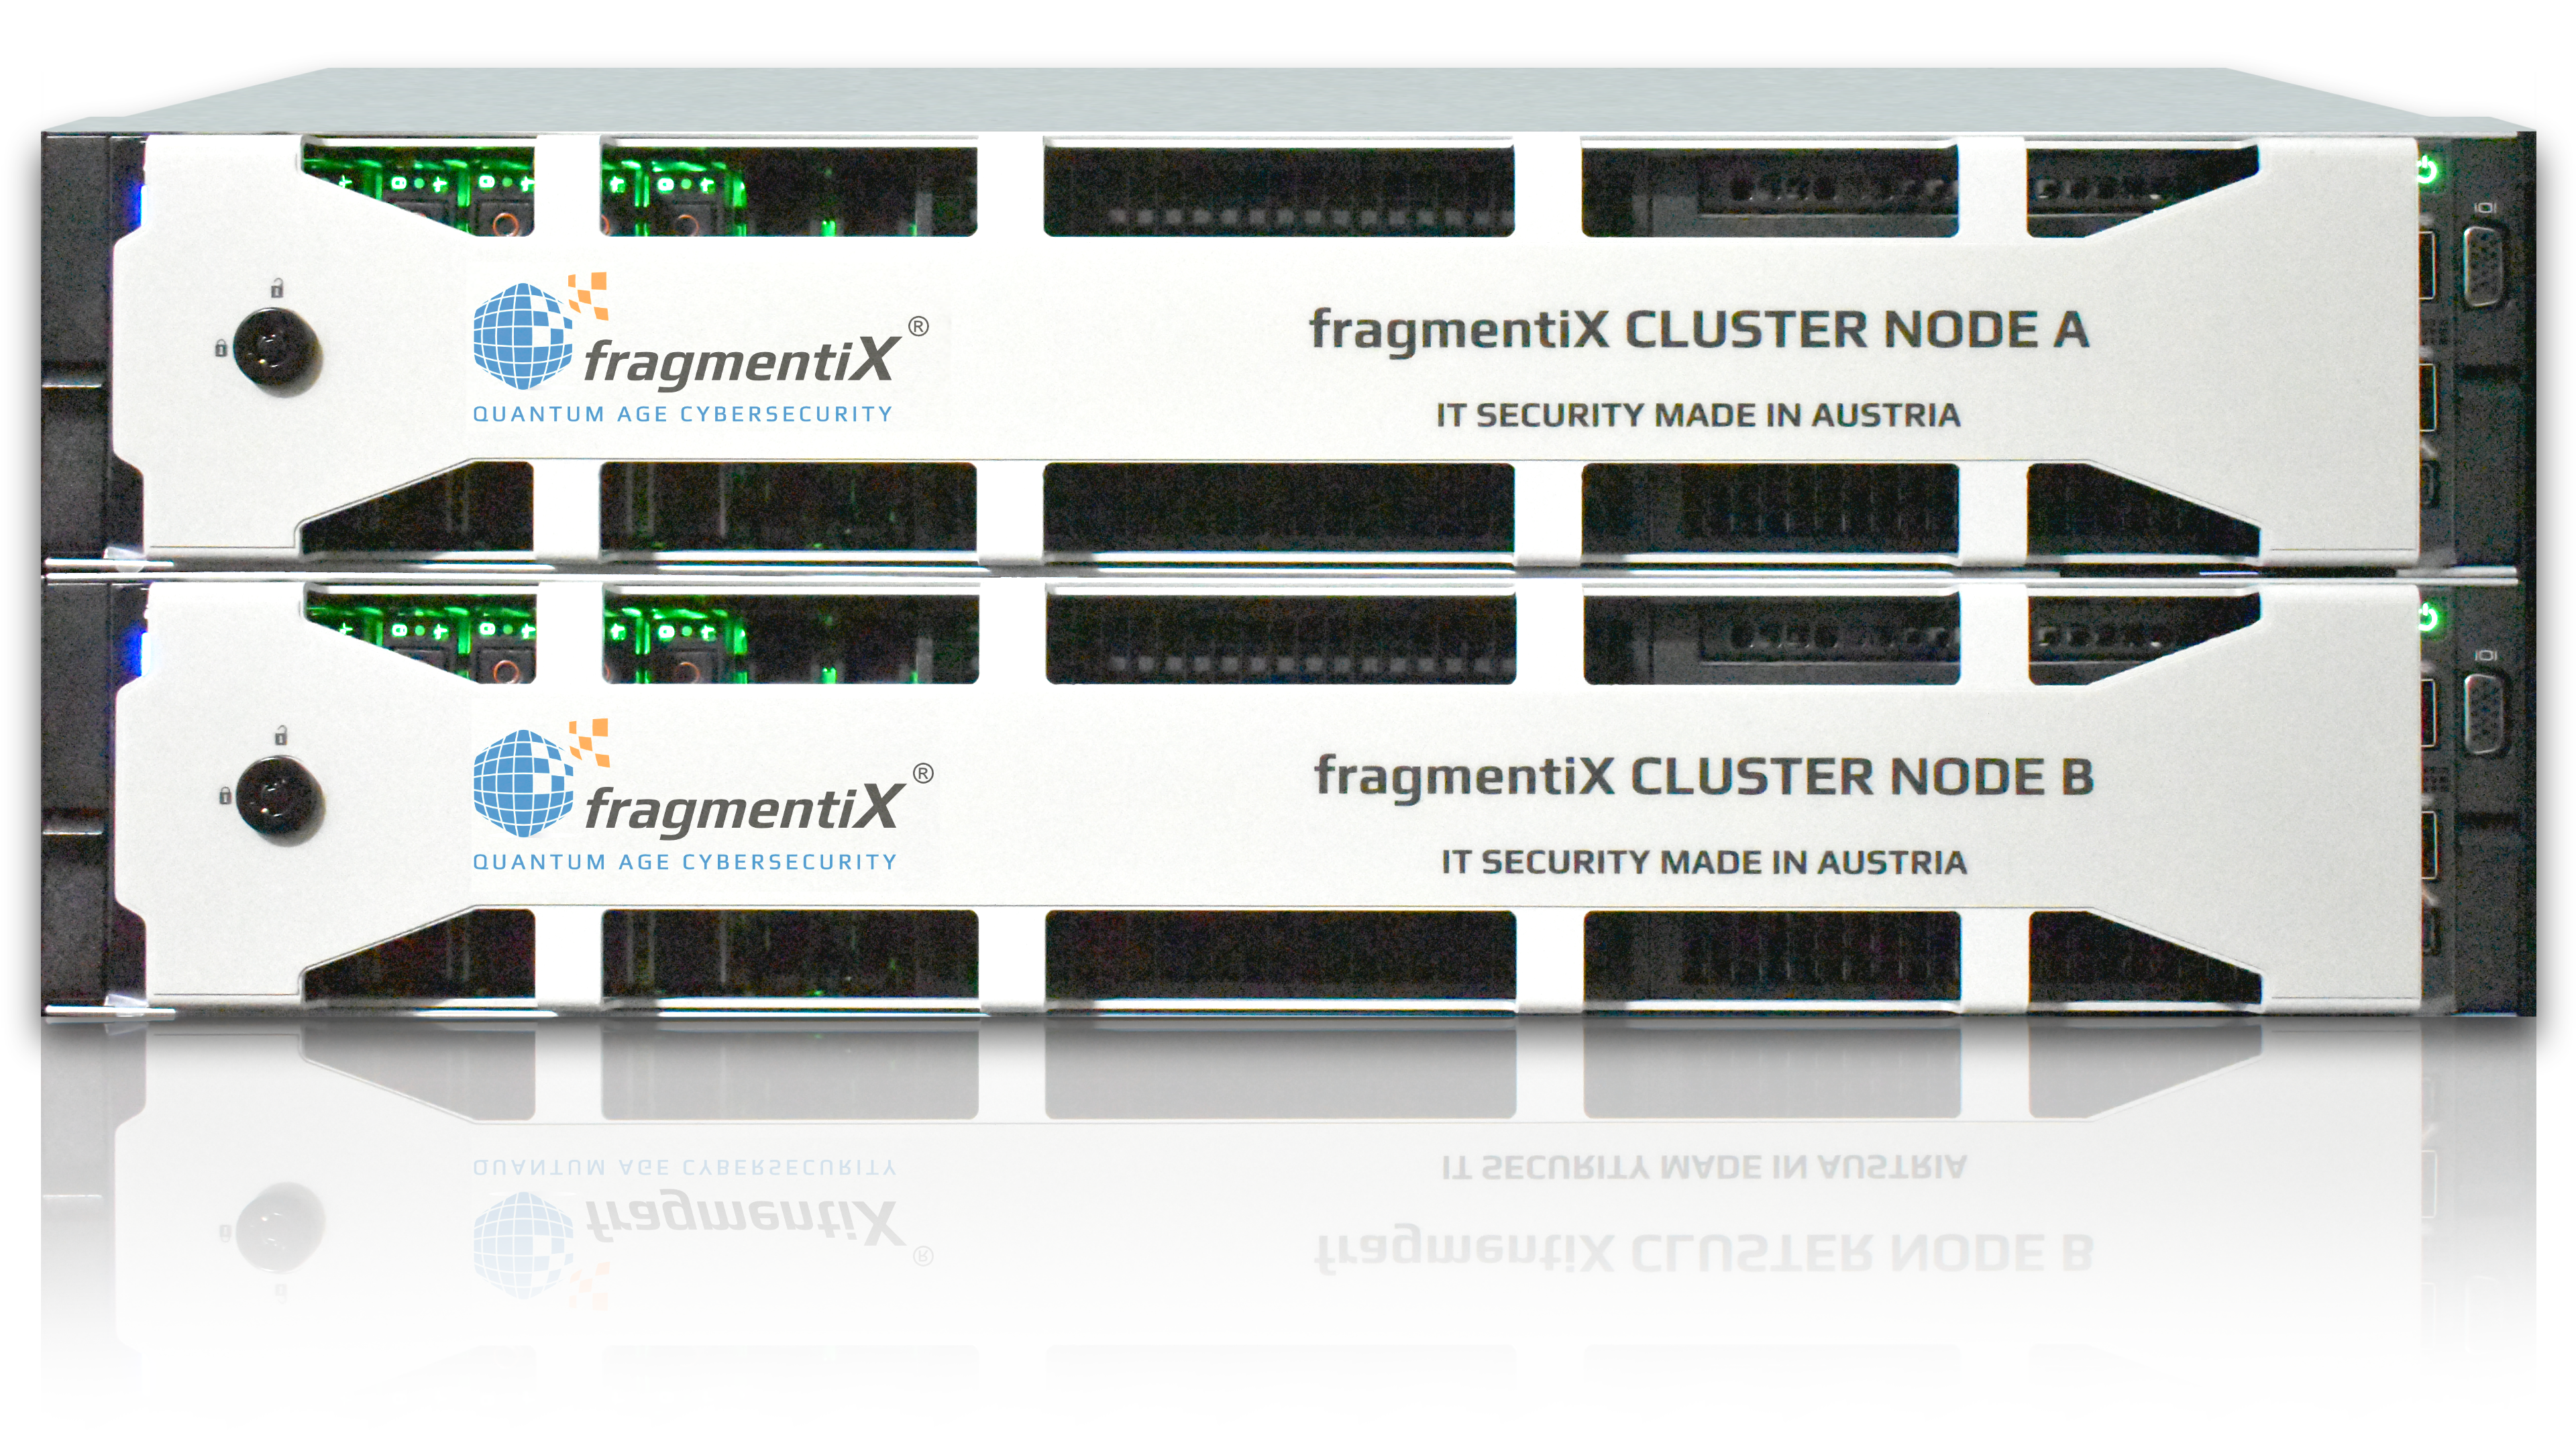 CLUSTER fragmentiX Nodo A & B